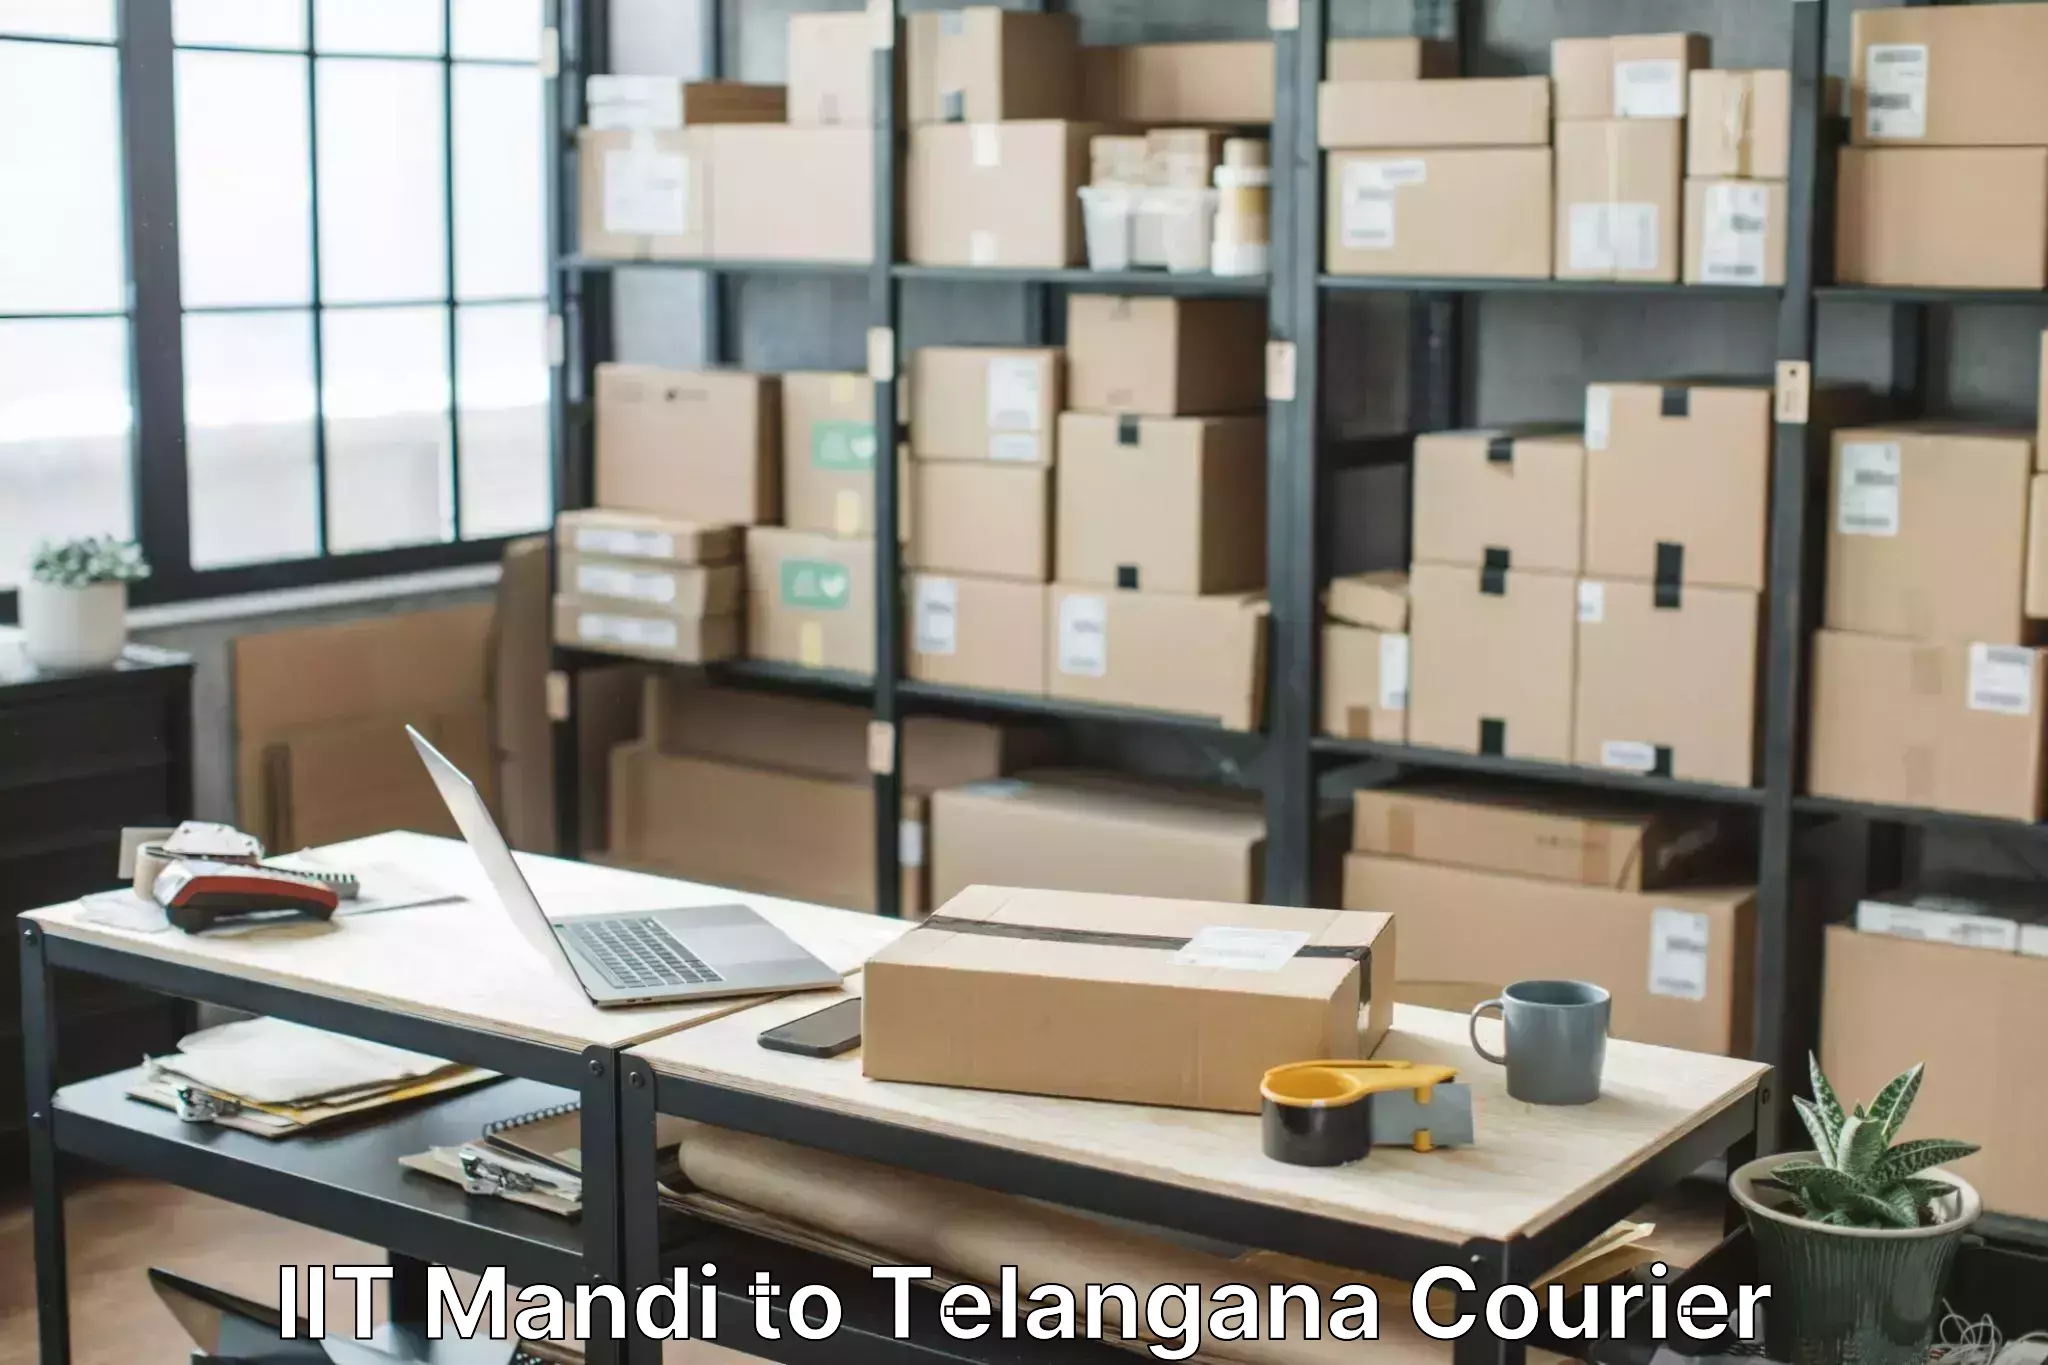 Furniture moving experts IIT Mandi to Eligedu